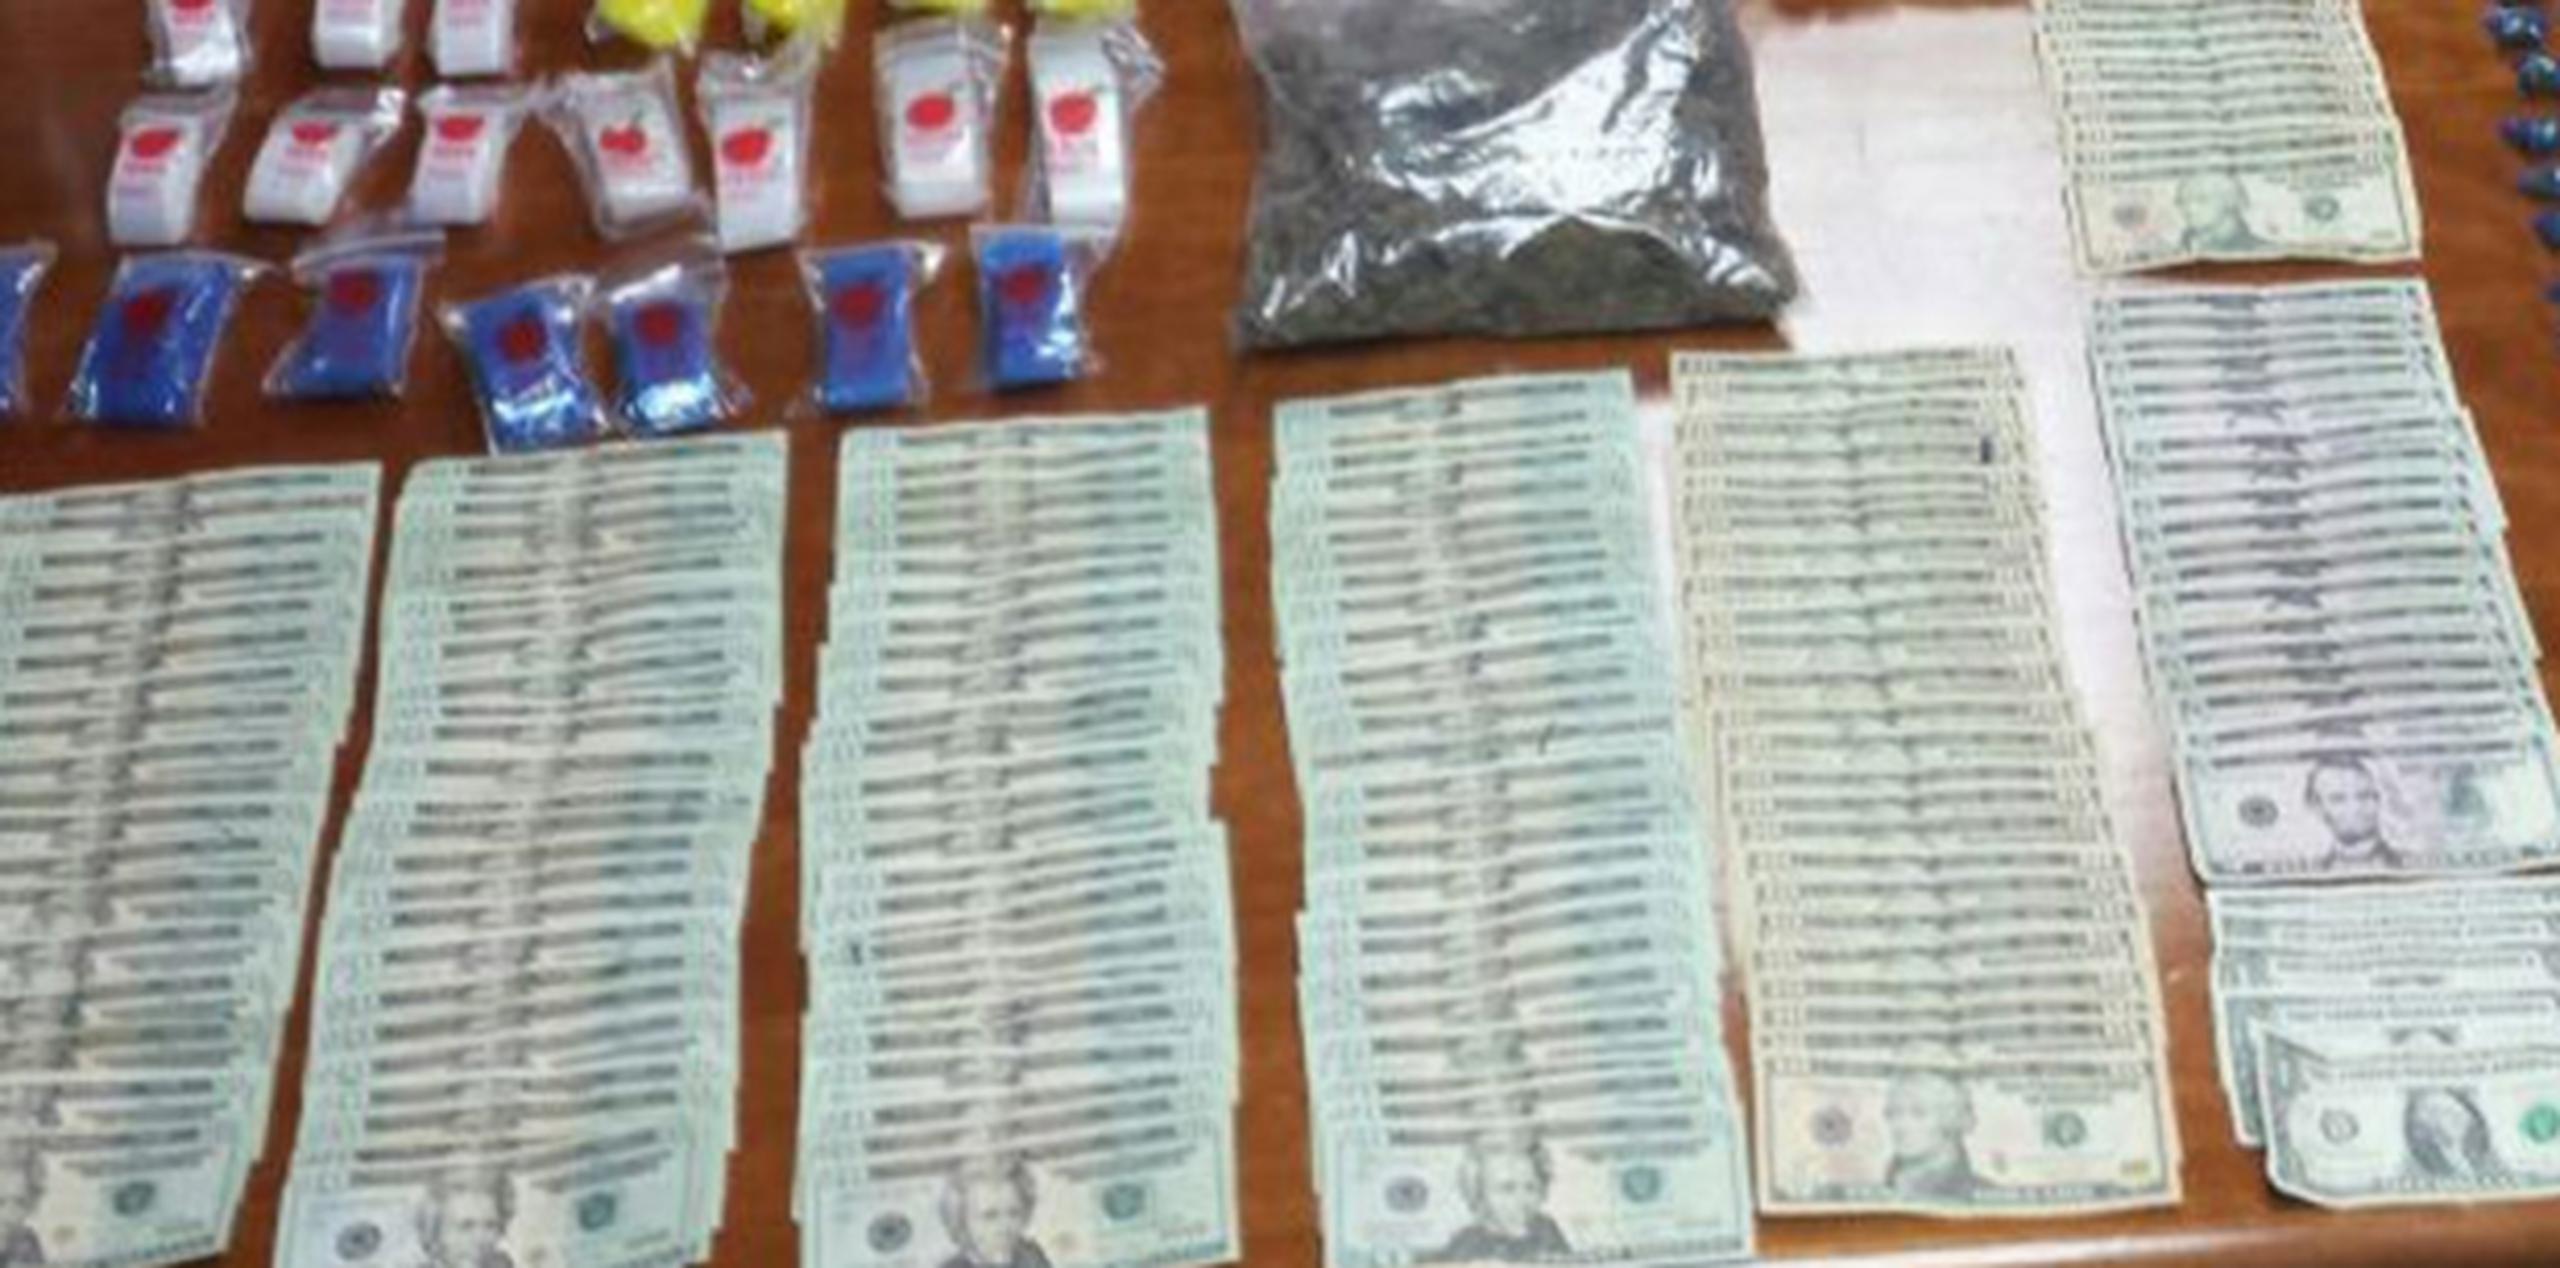 Los agentes ocuparon una pistola , dos cargadores, 165 balas, $2,186, 127 bolsitas con cocaína, 100 cápsulas de crack y material para procesar sustancias. (Archivo)